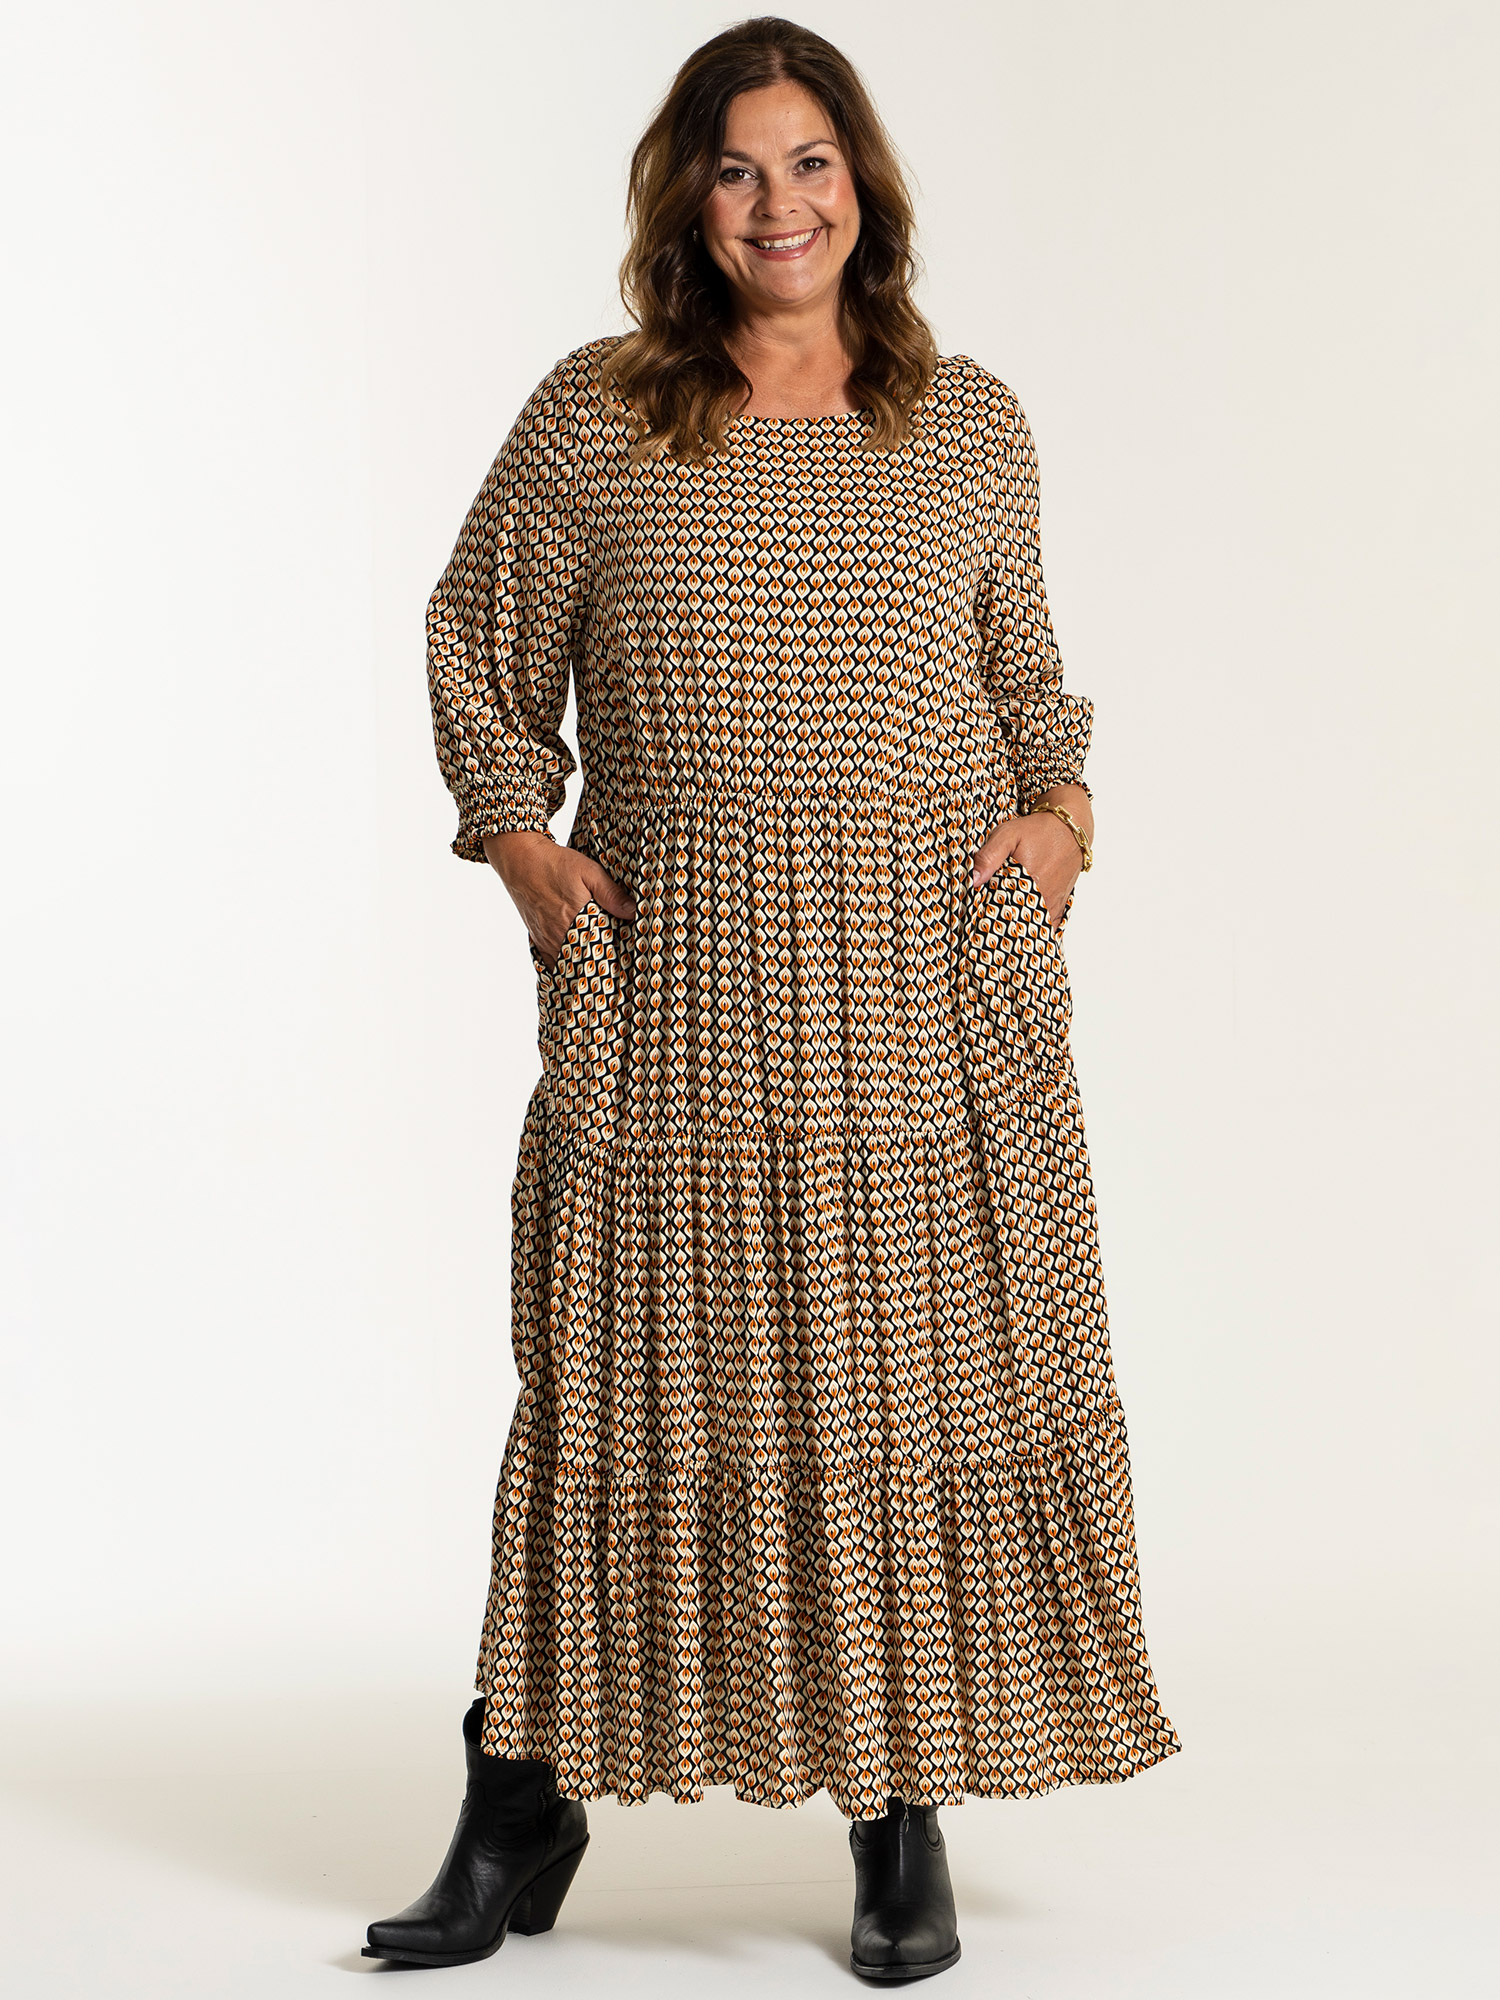 SUSSIE - Lang sort viskose flæse kjole med print fra Gozzip